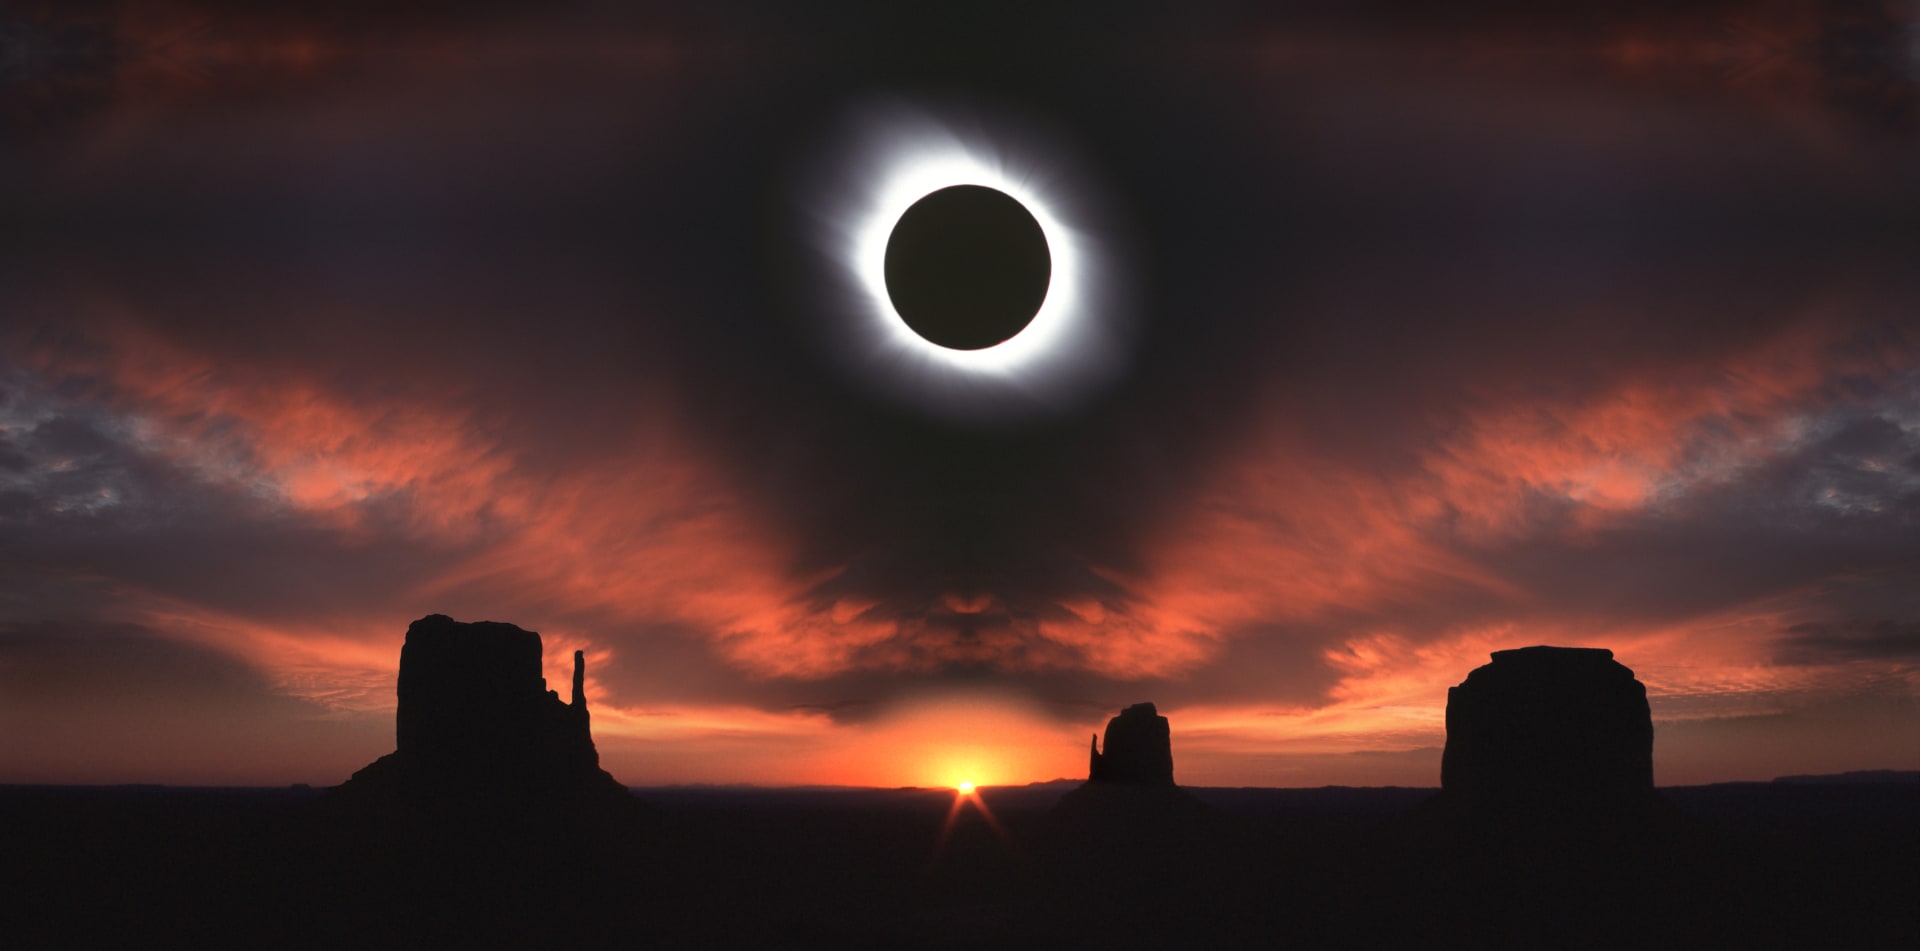 Úplné zatmění Slunce vyfotografované v roce 2011 v Utahu